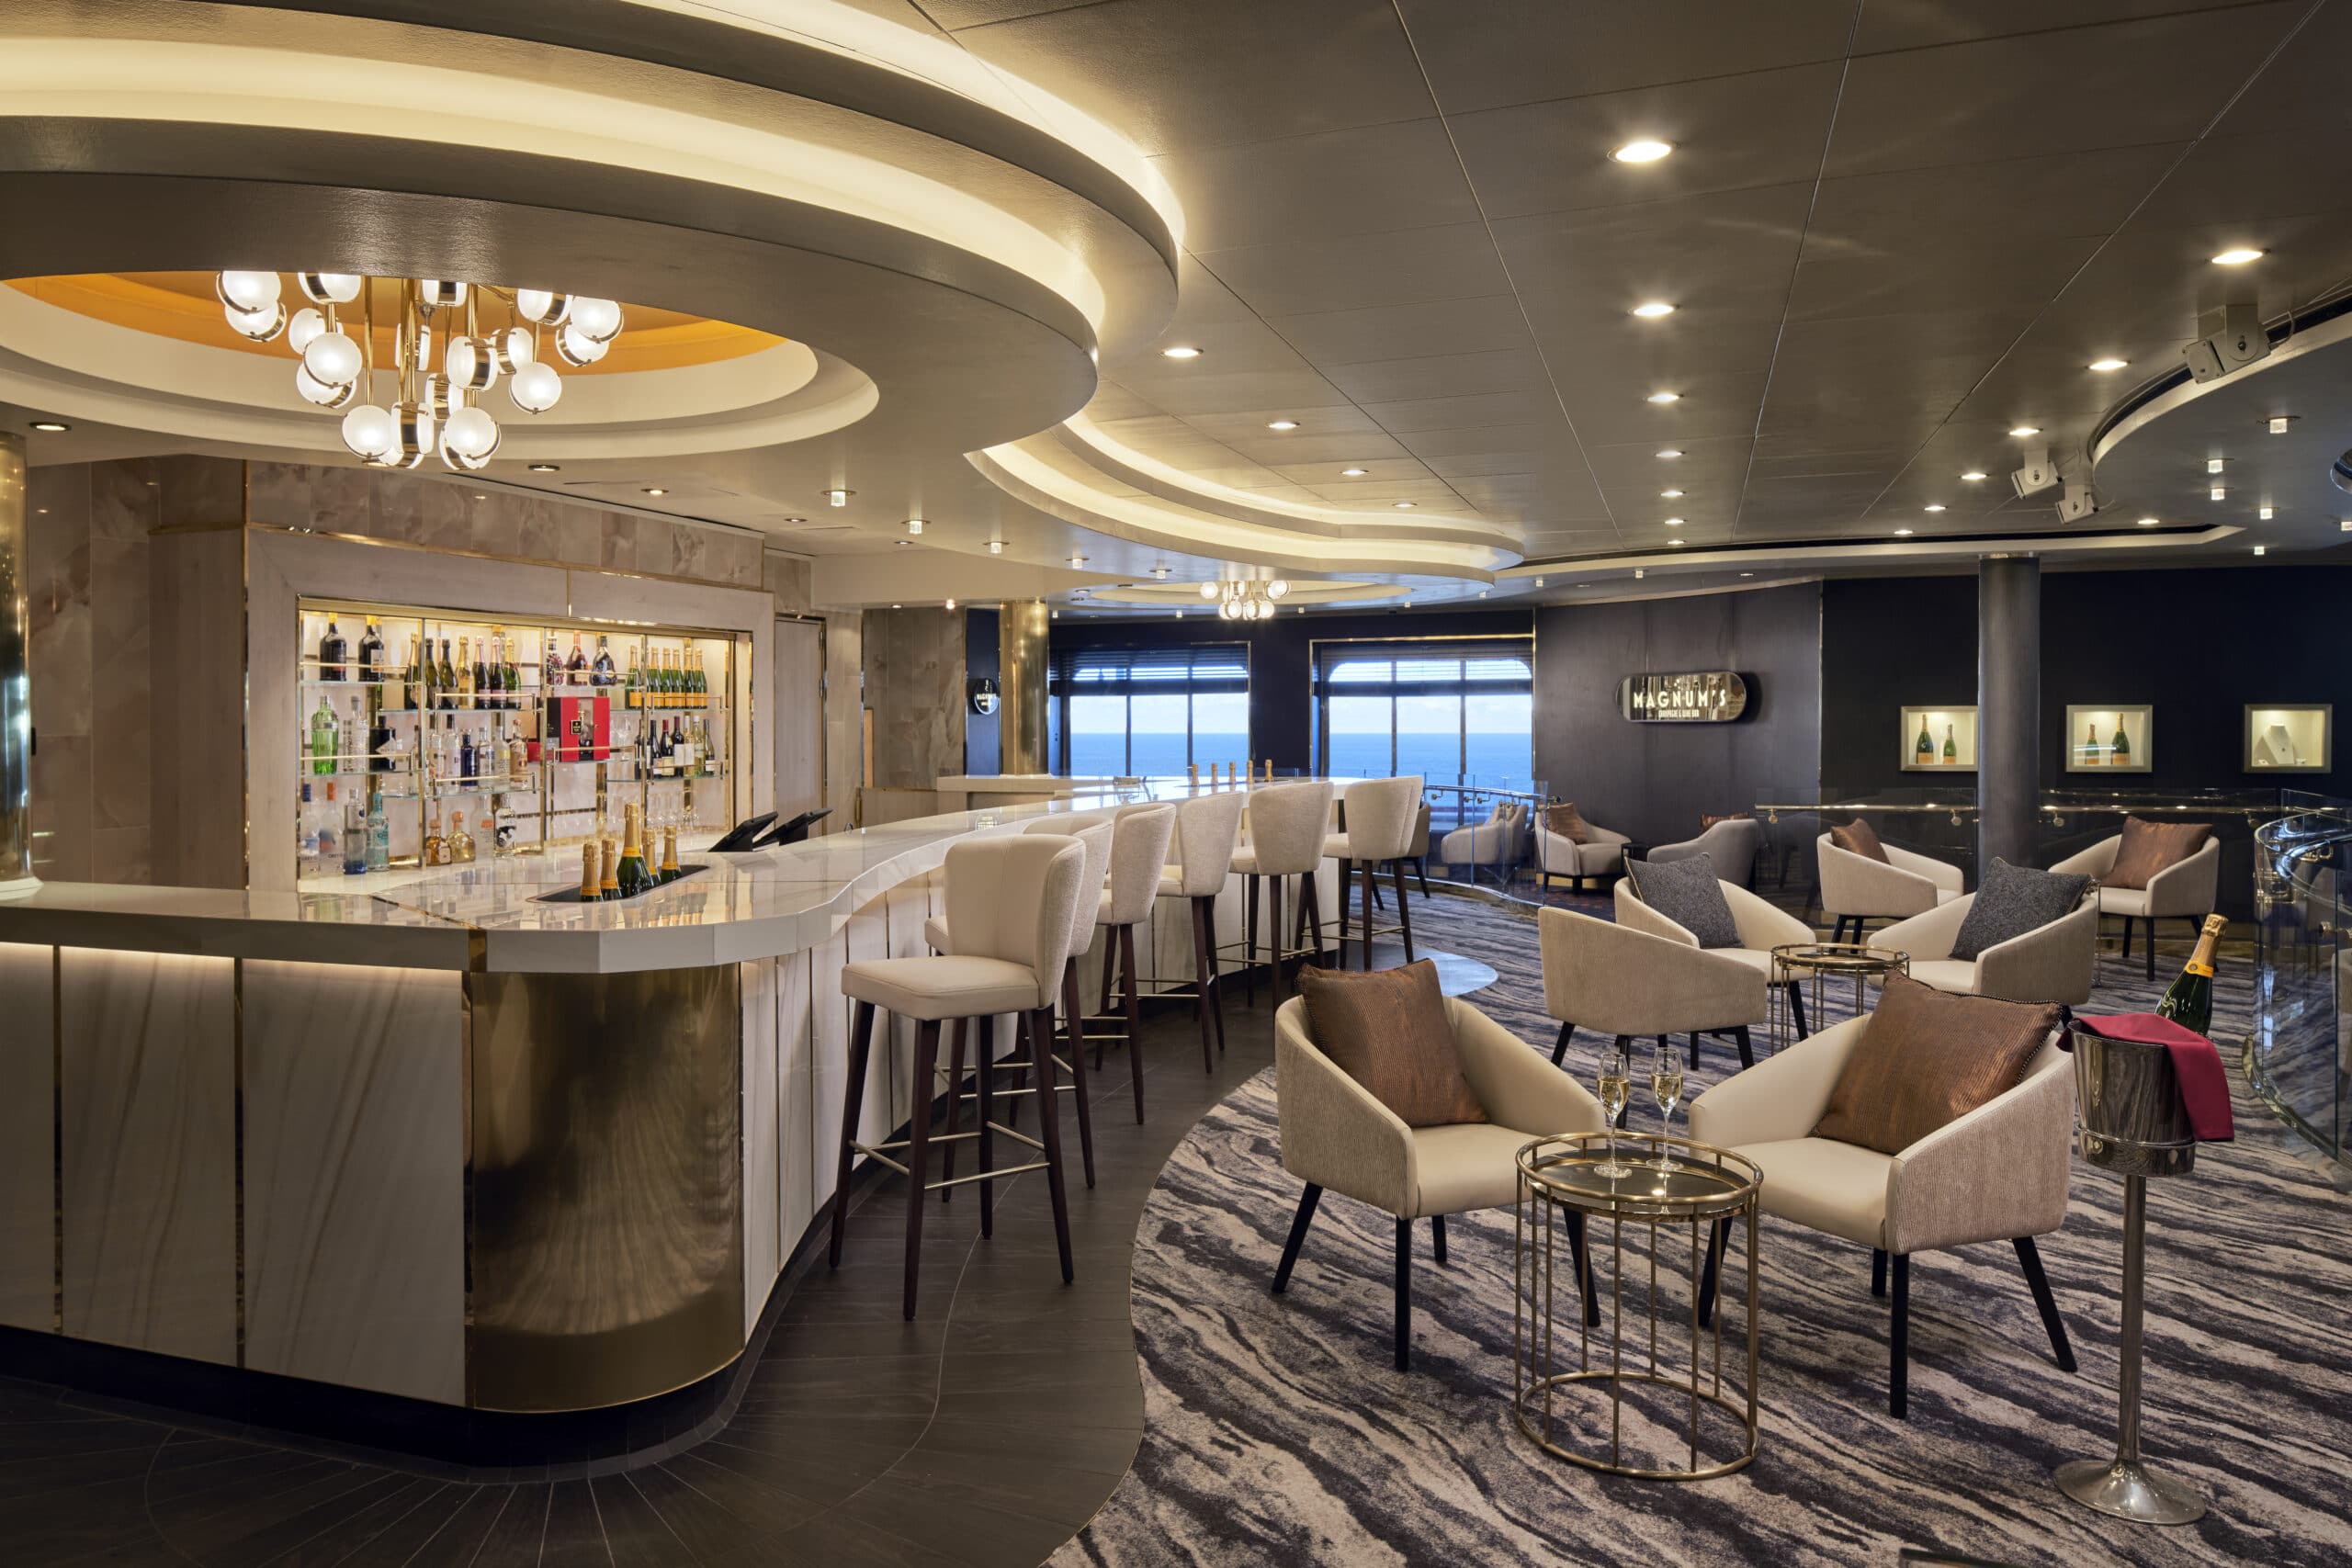 Cruiseschip-Norwegian Spirit-Norwegian Cruise Line-Champagne Bar